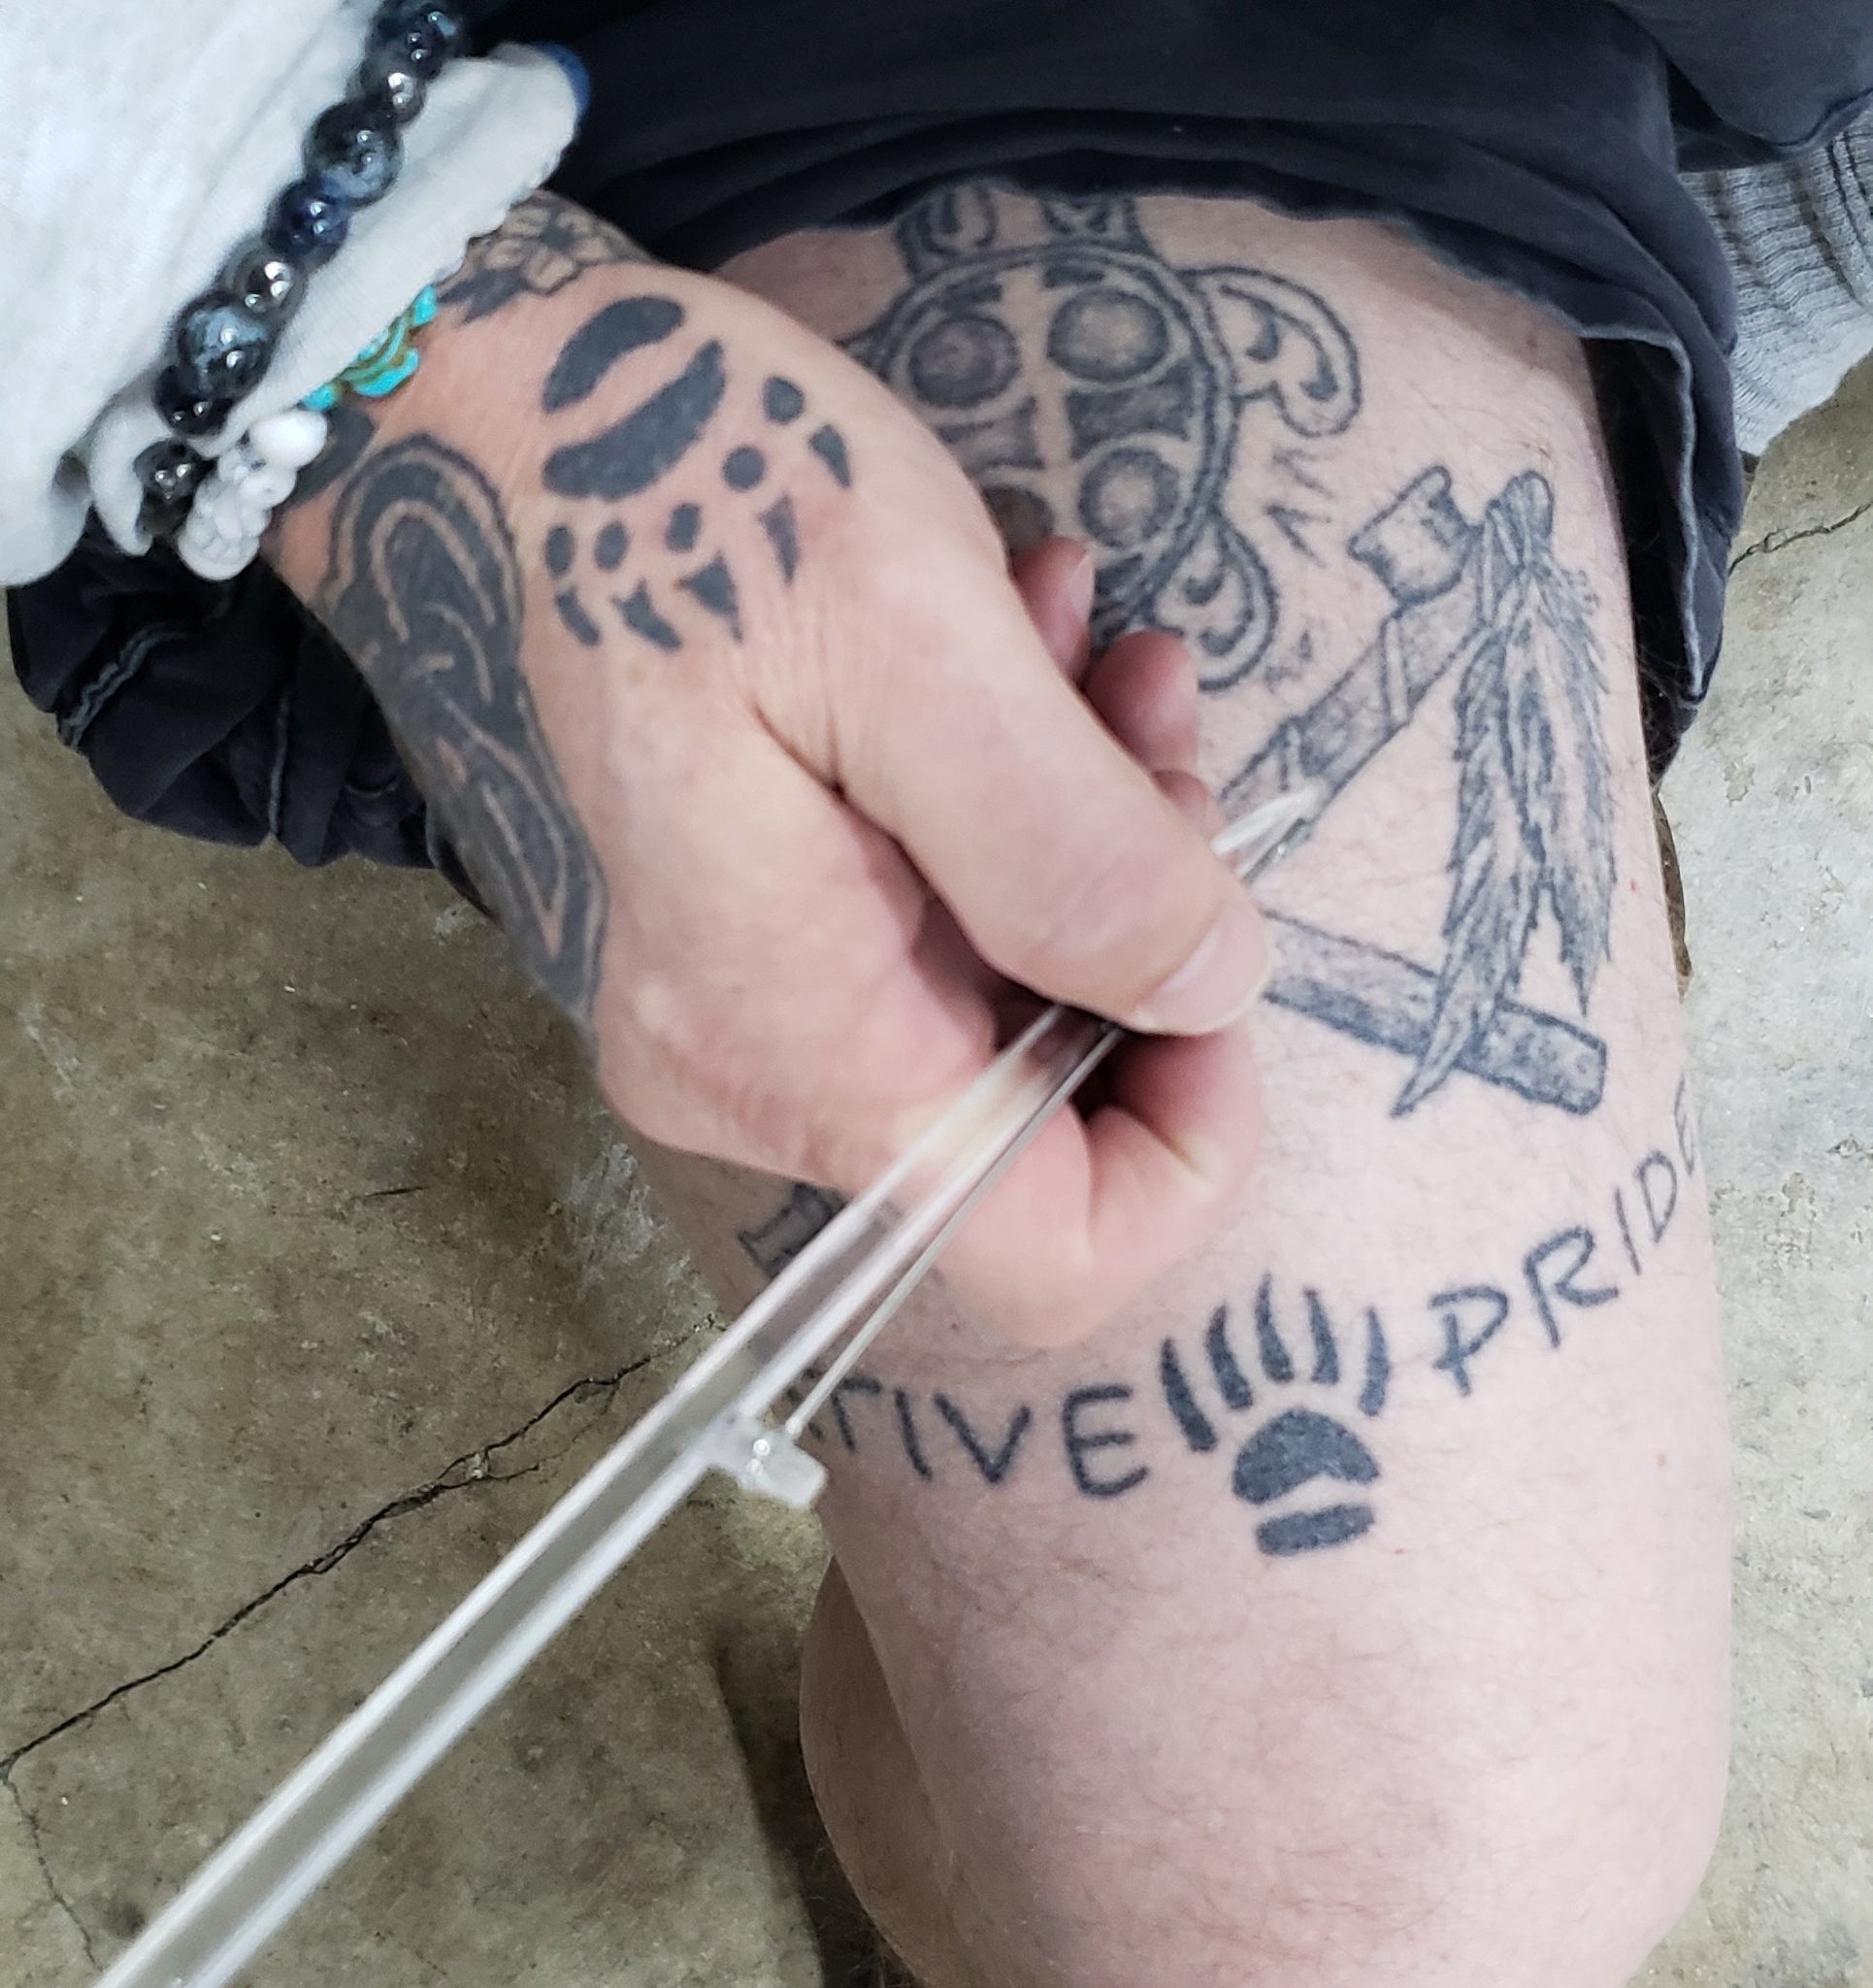 HAND POKE TATTOO KIT  Anarchy Tattoo Supplies